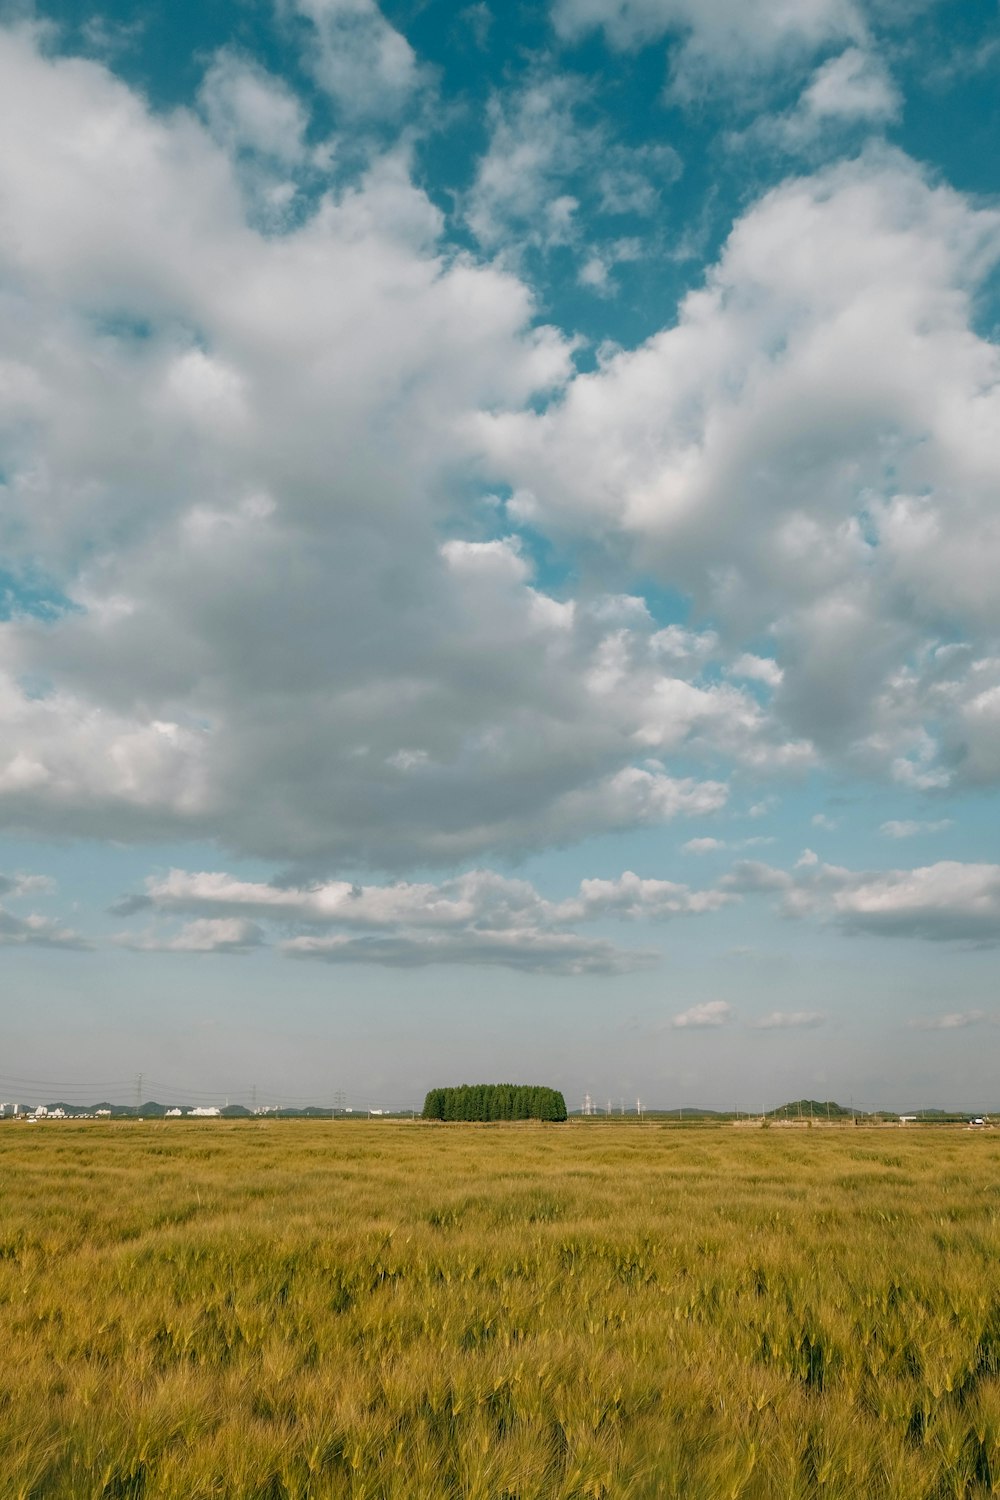 a field of grass under a cloudy blue sky